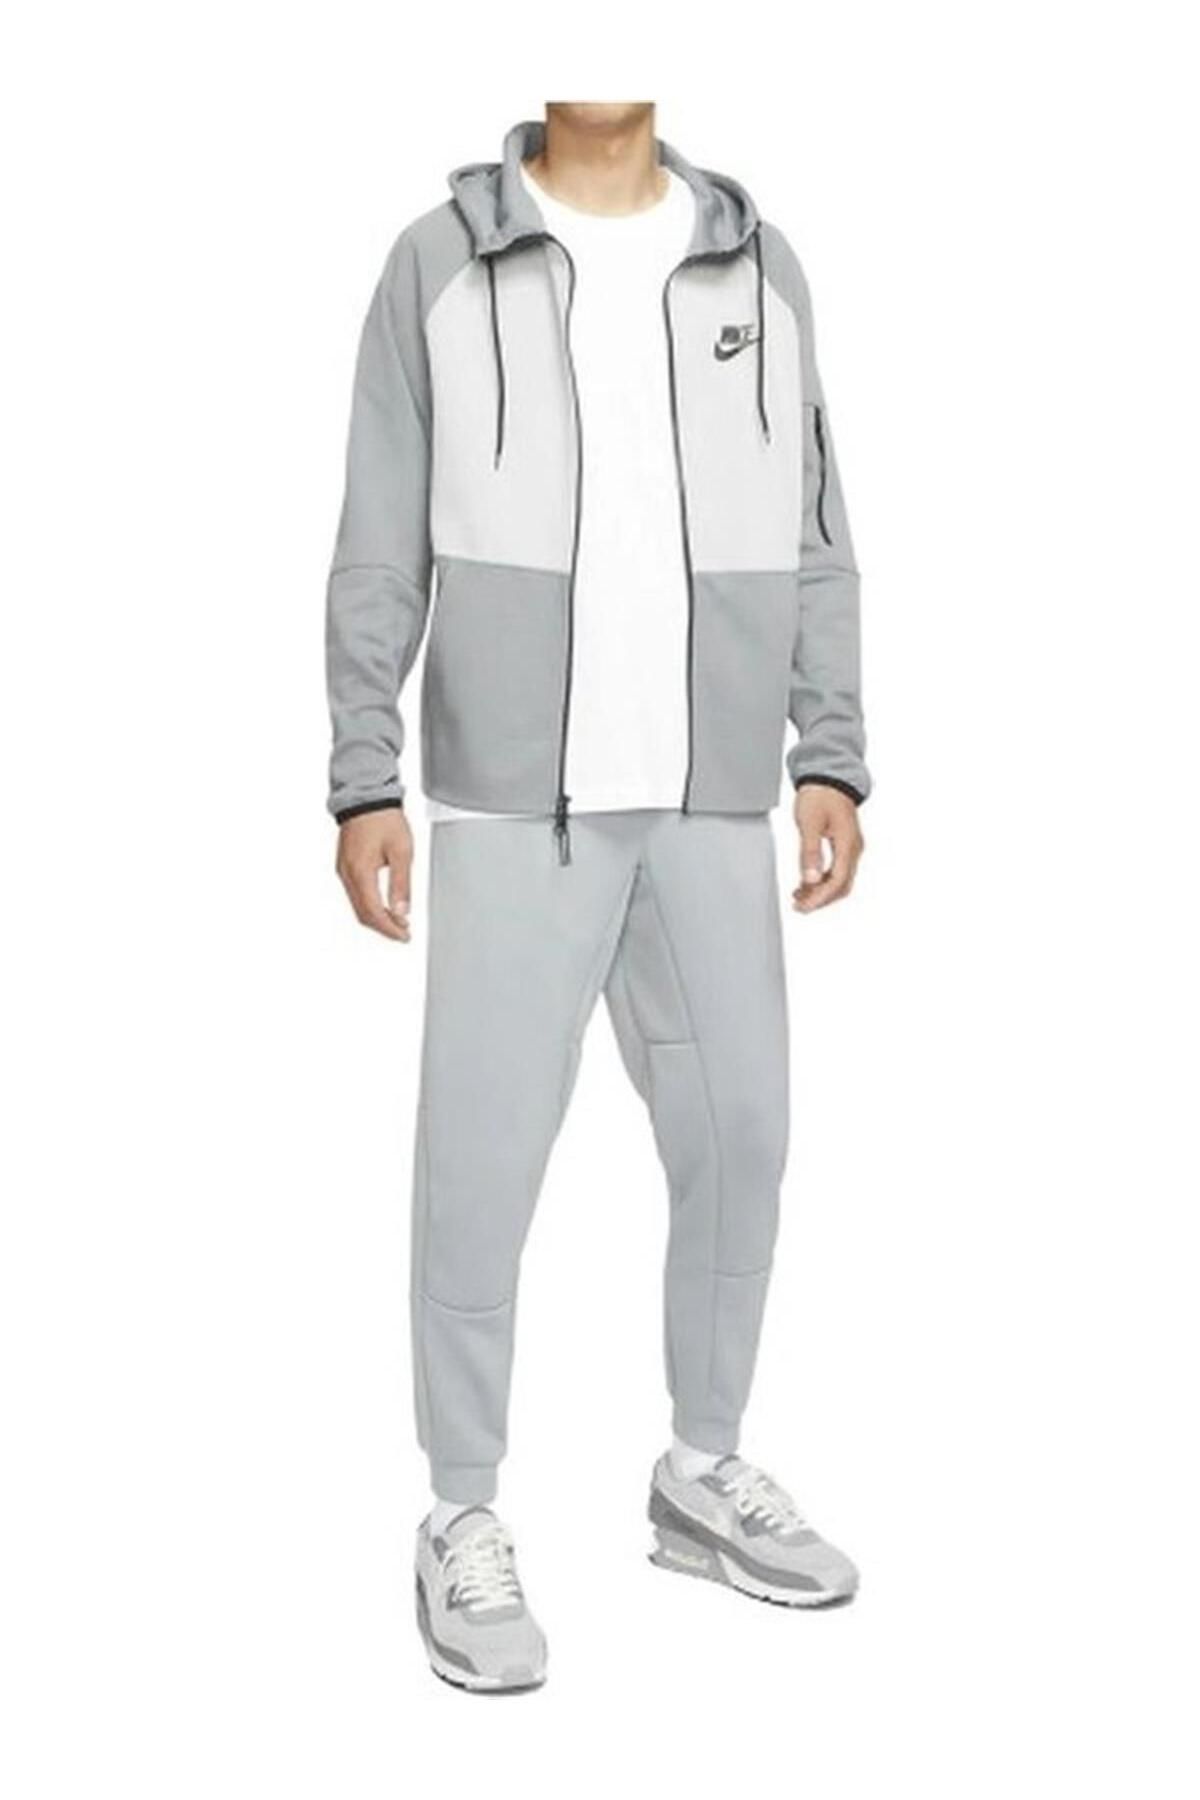 Nike Sportswear Hoodie Full-zip Windrunner Gri Erkek Sweatshirt Dr8910-084